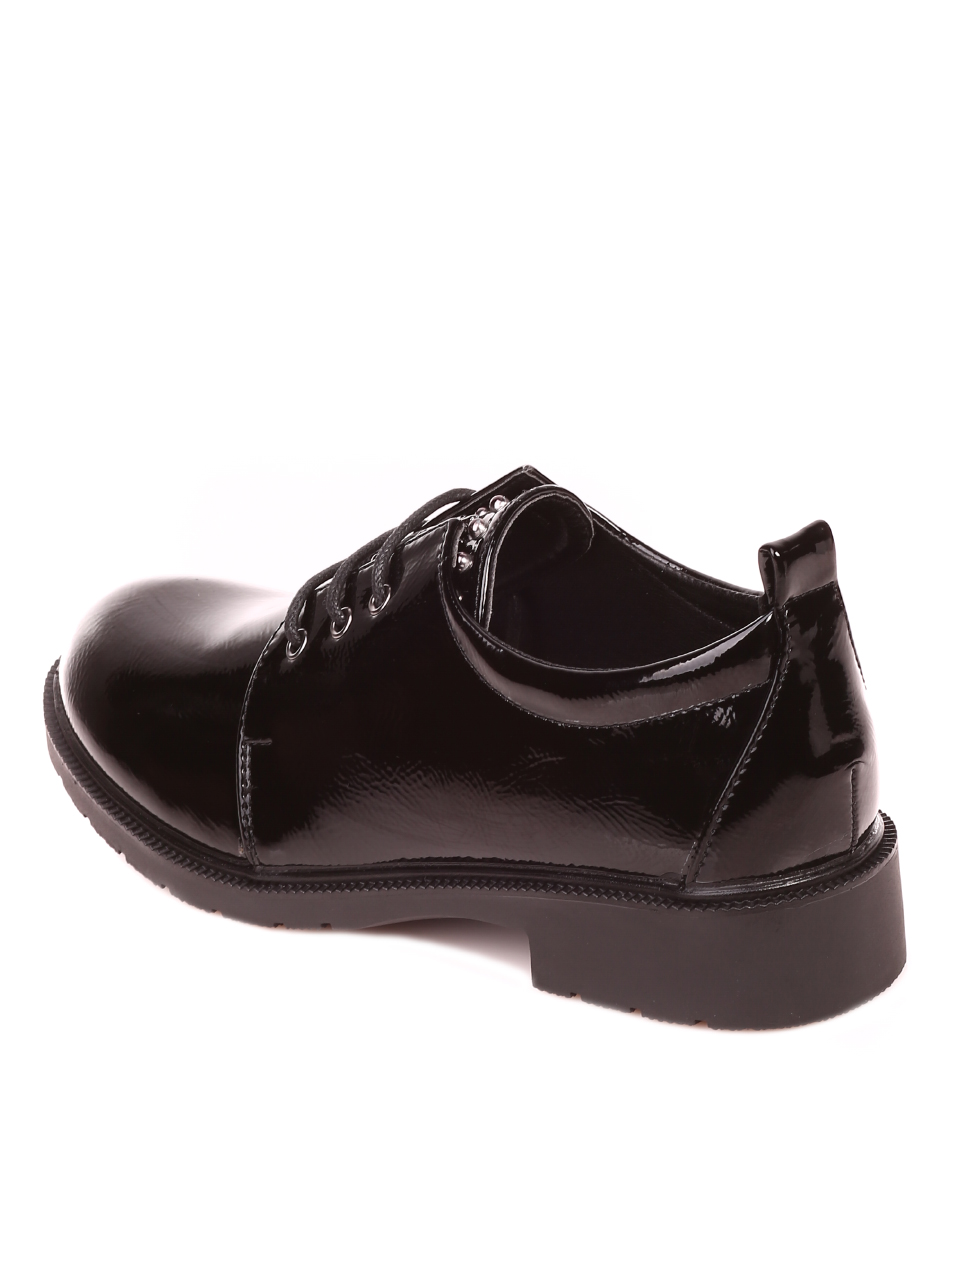 Ежедневни дамски лачени обувки в черно 3R-21633 black patent